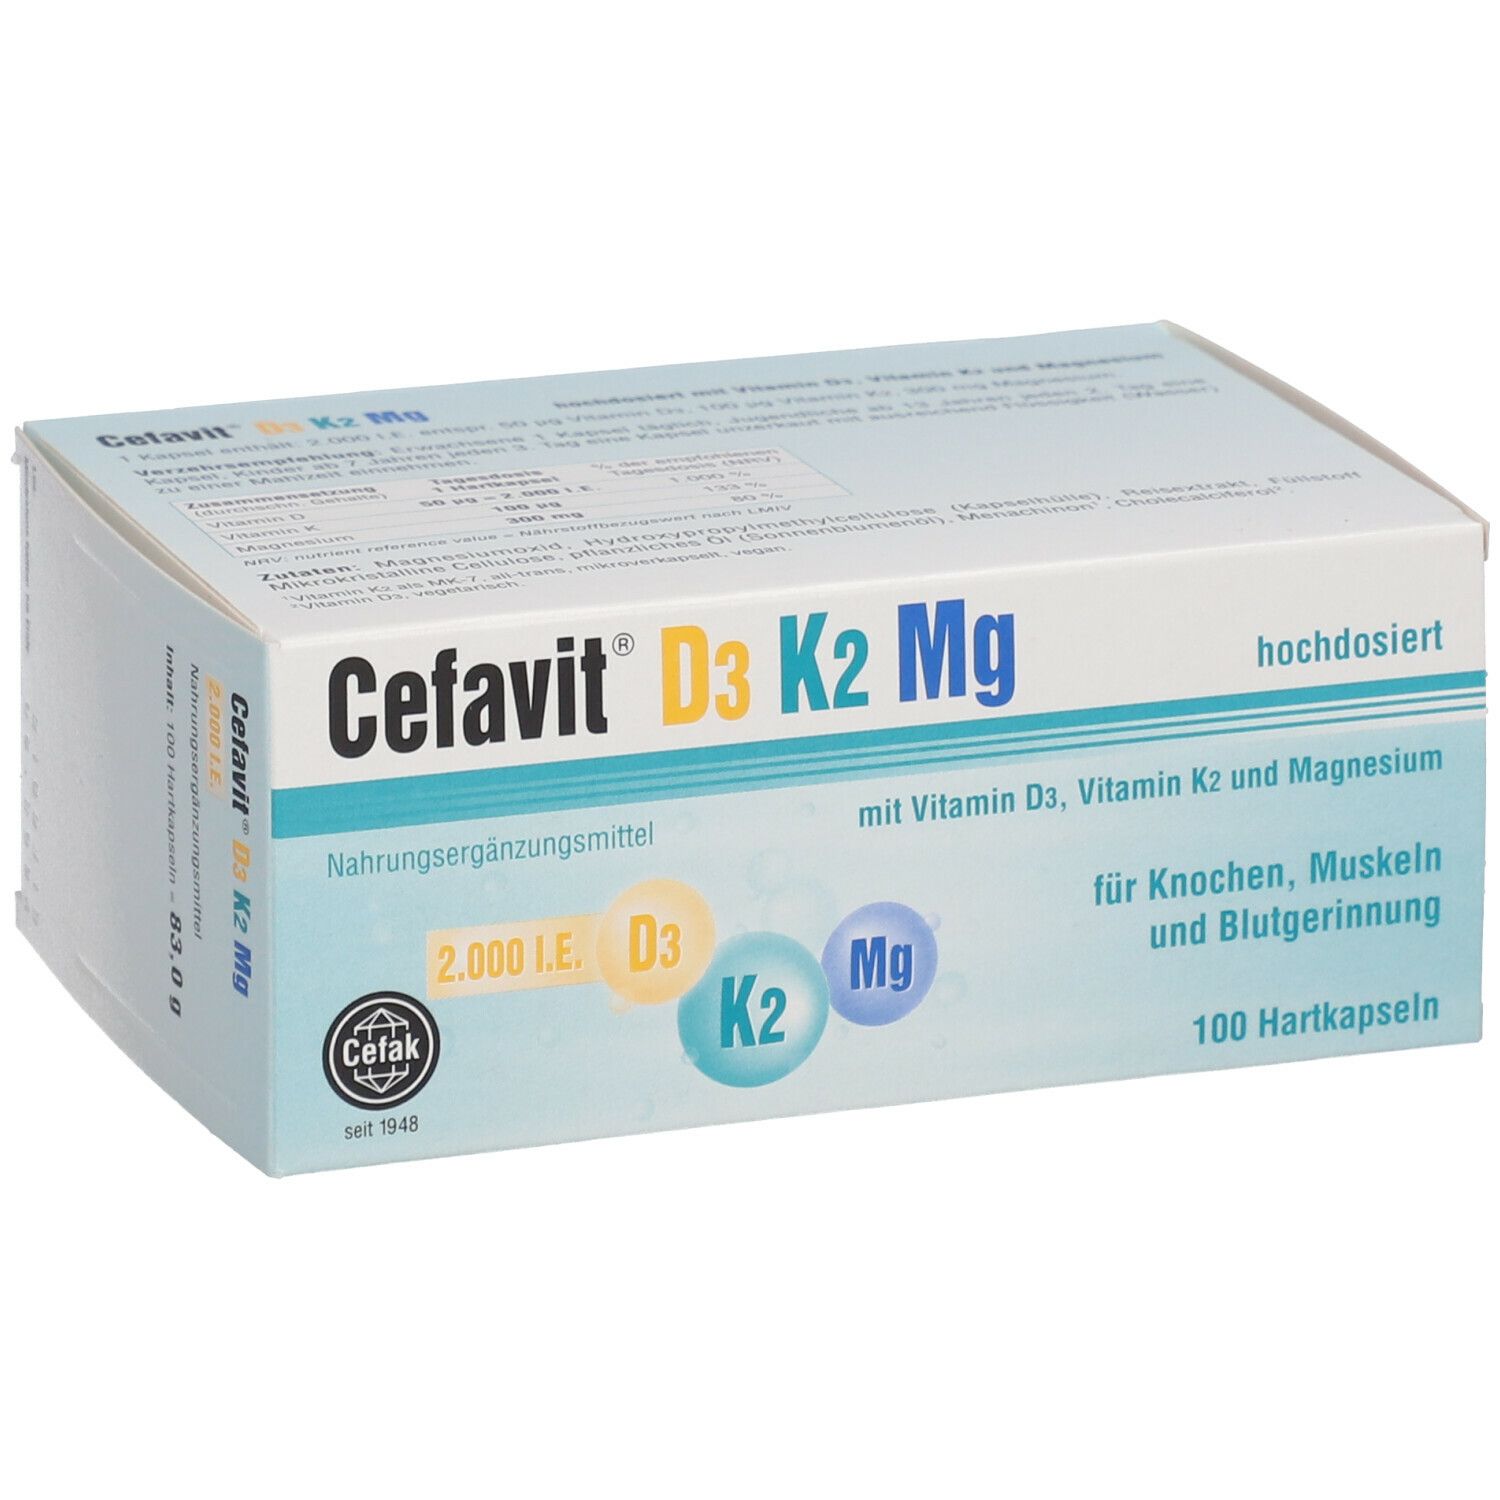 Cefavit® D3 K2 Mg